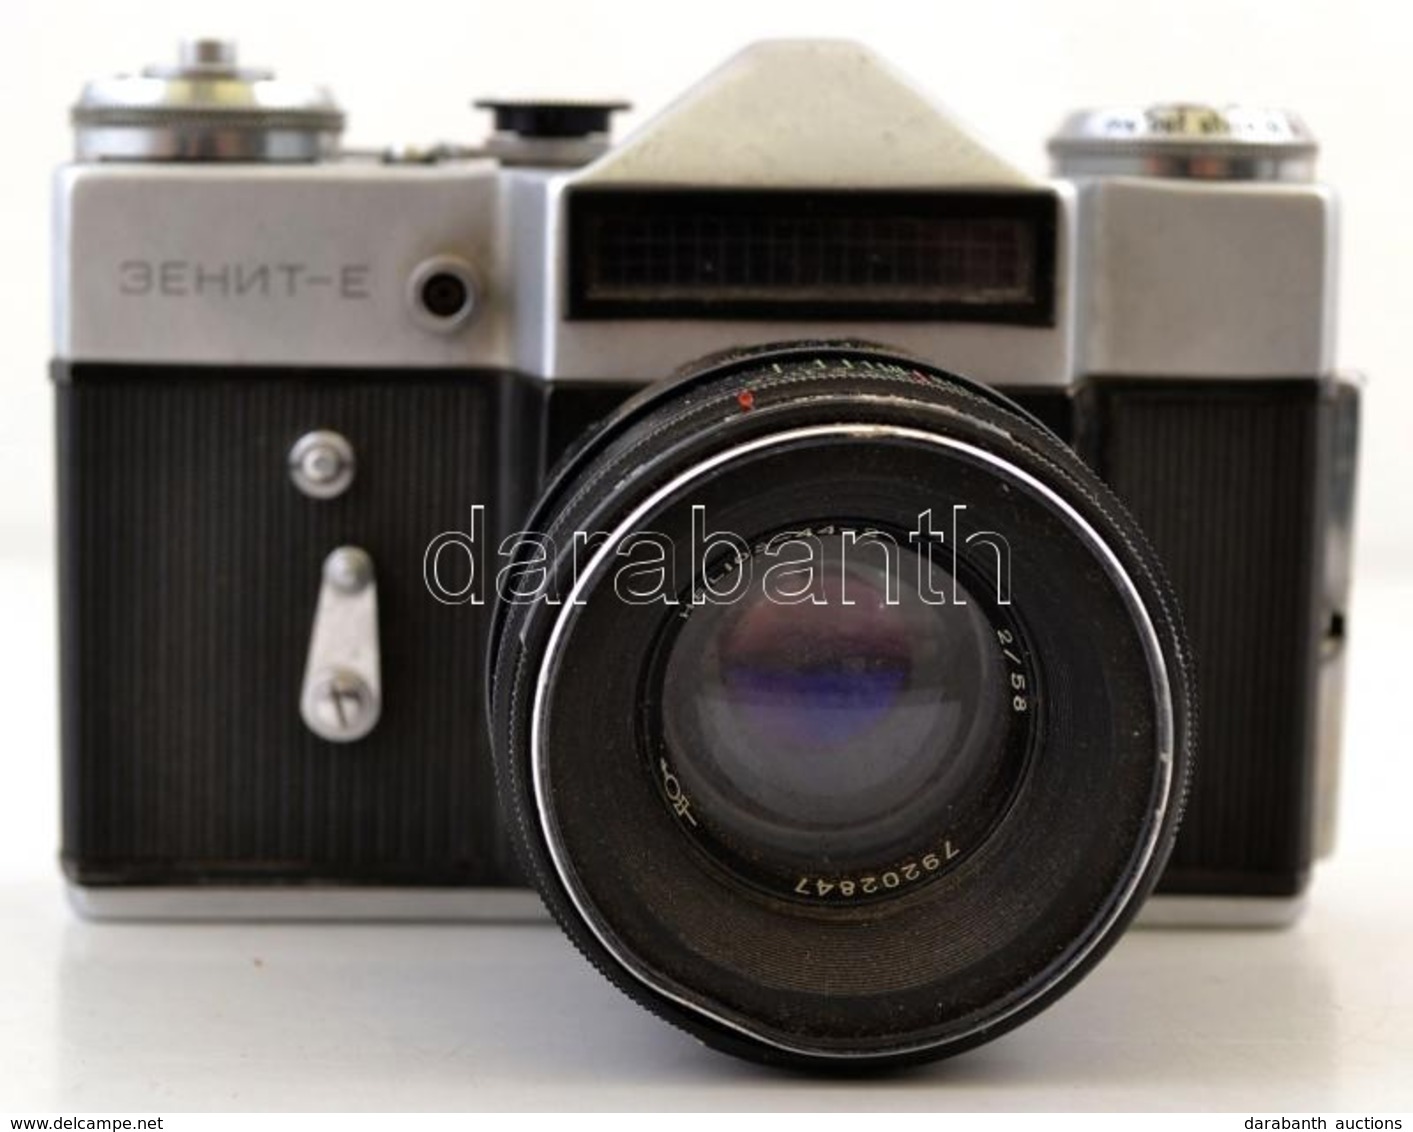 Zenit-E Fényképezőgép, Helios-44 2/58 Objektívvel, Eredeti Bőr Tokjában, Működőképes állapotban. /Vintage Russian Camera - Macchine Fotografiche